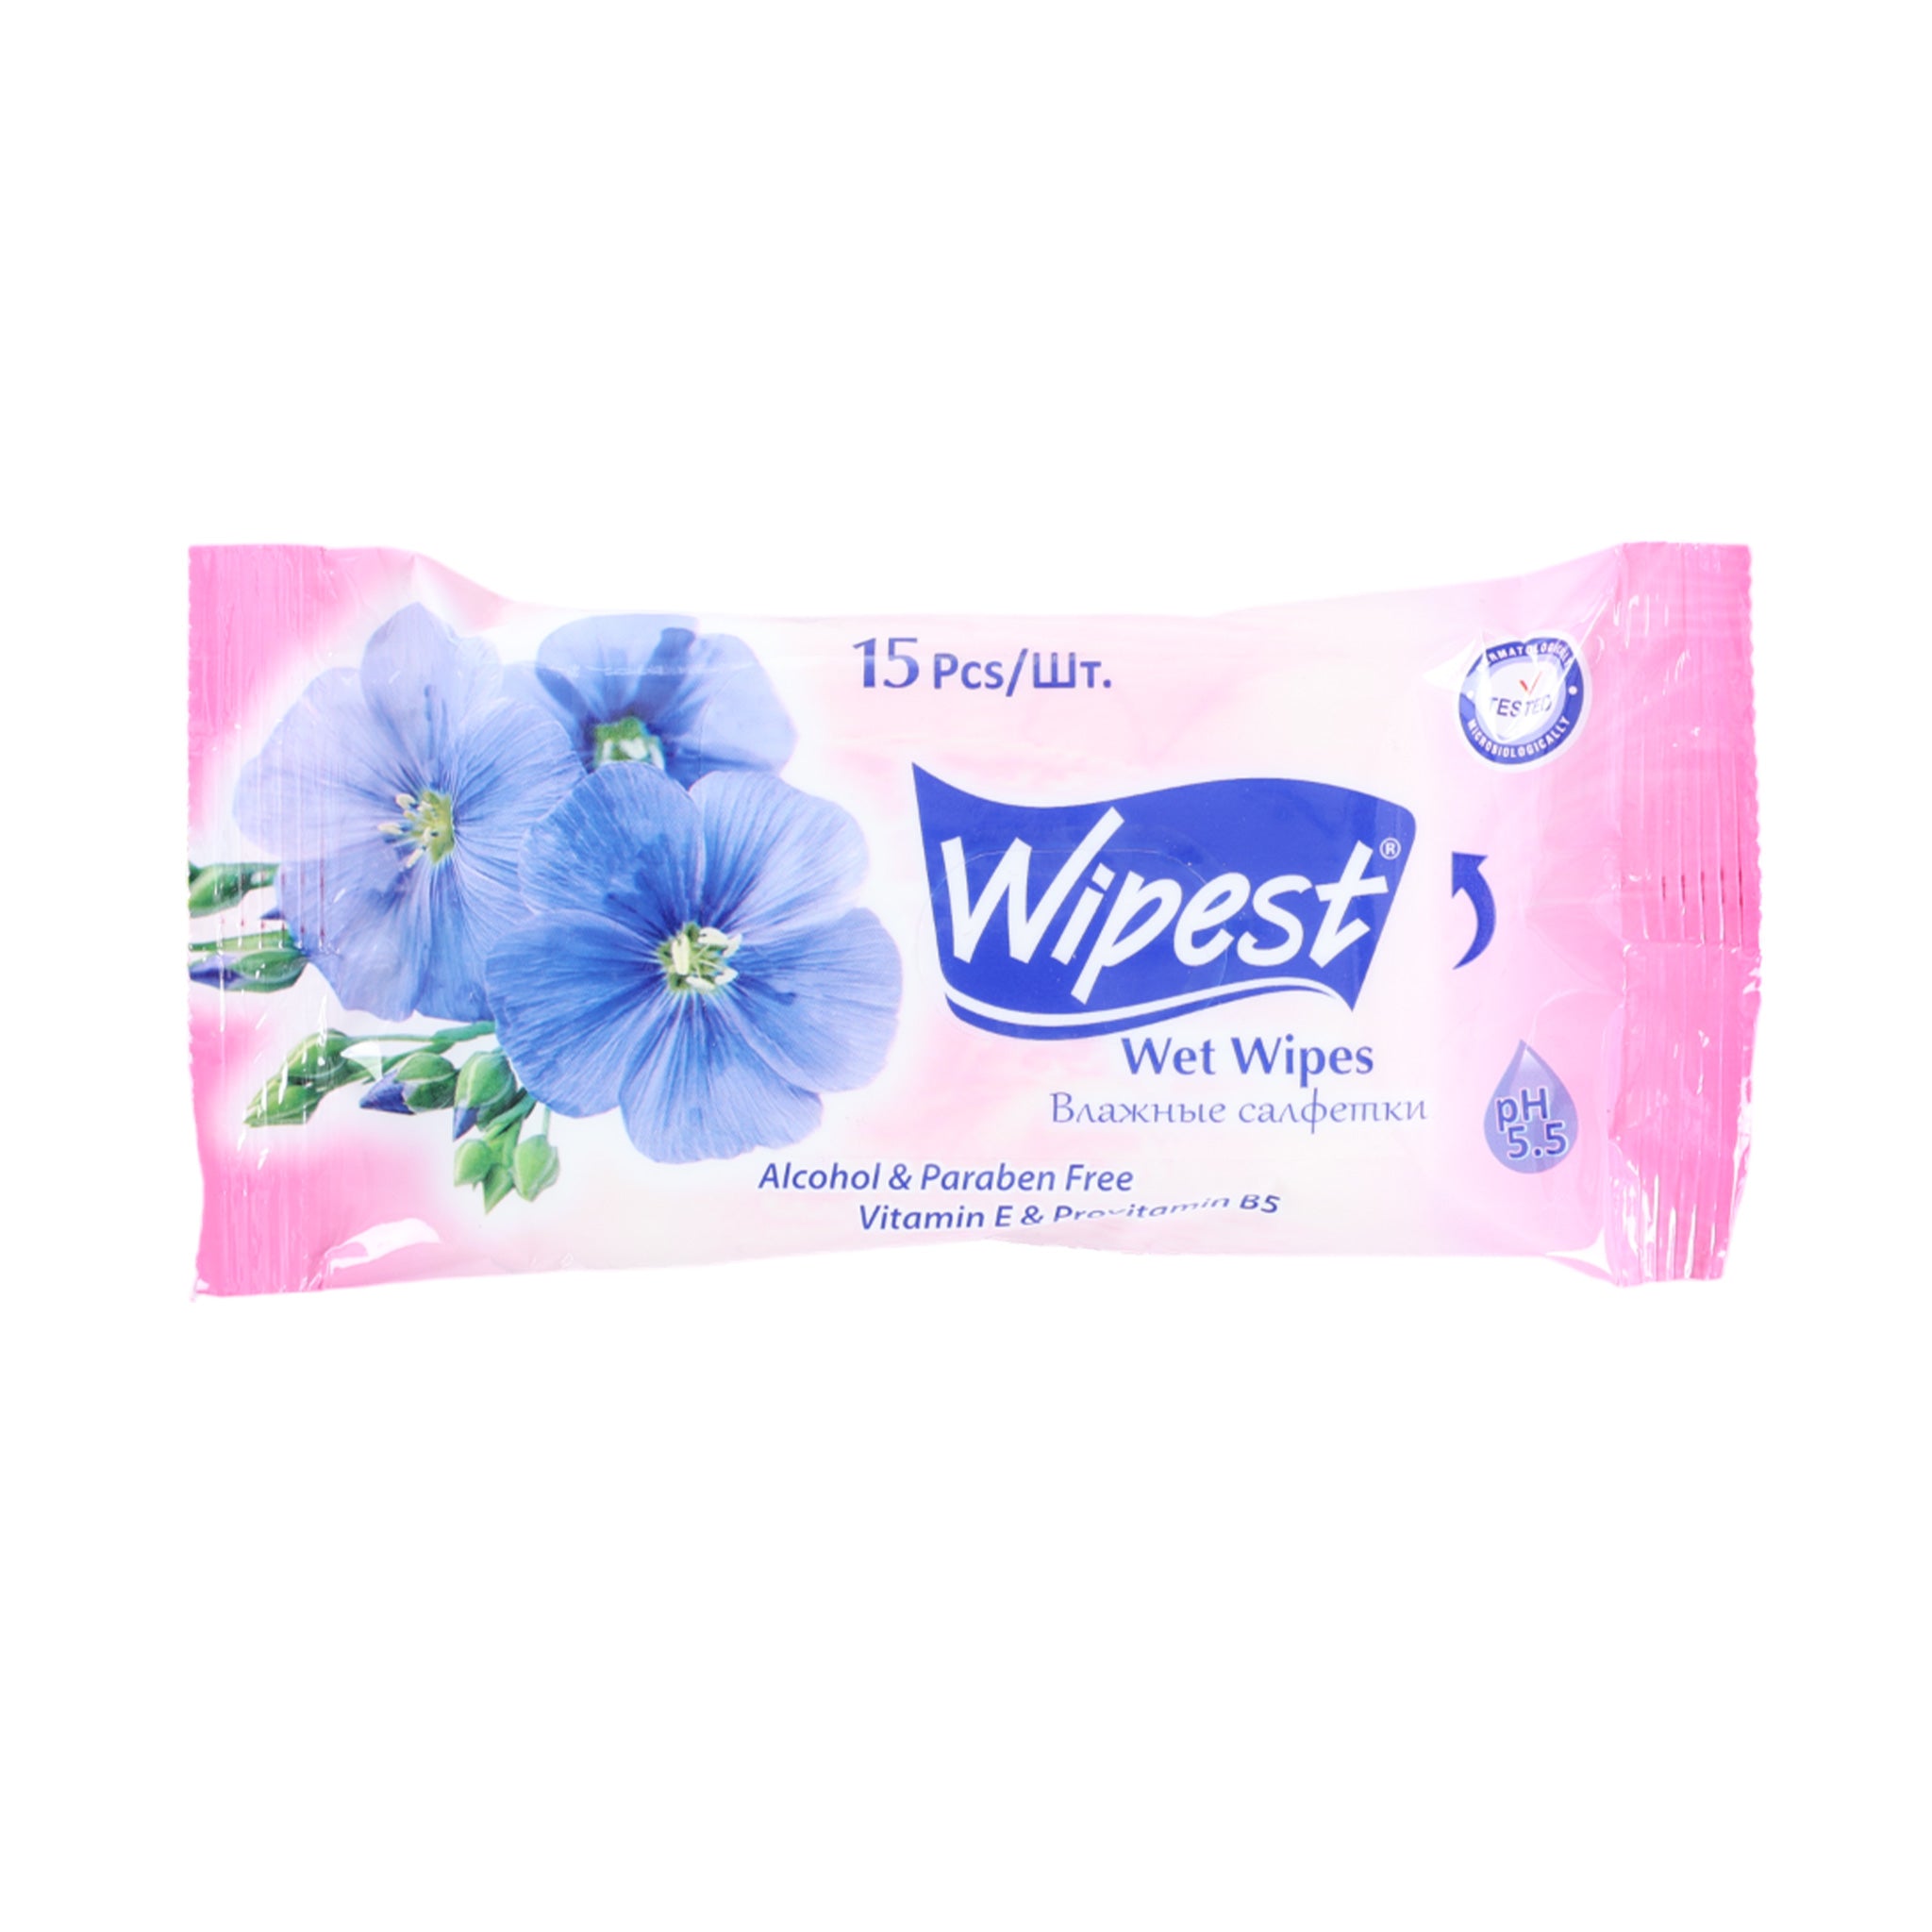 Wipest Wet Wipes 15 Pieces